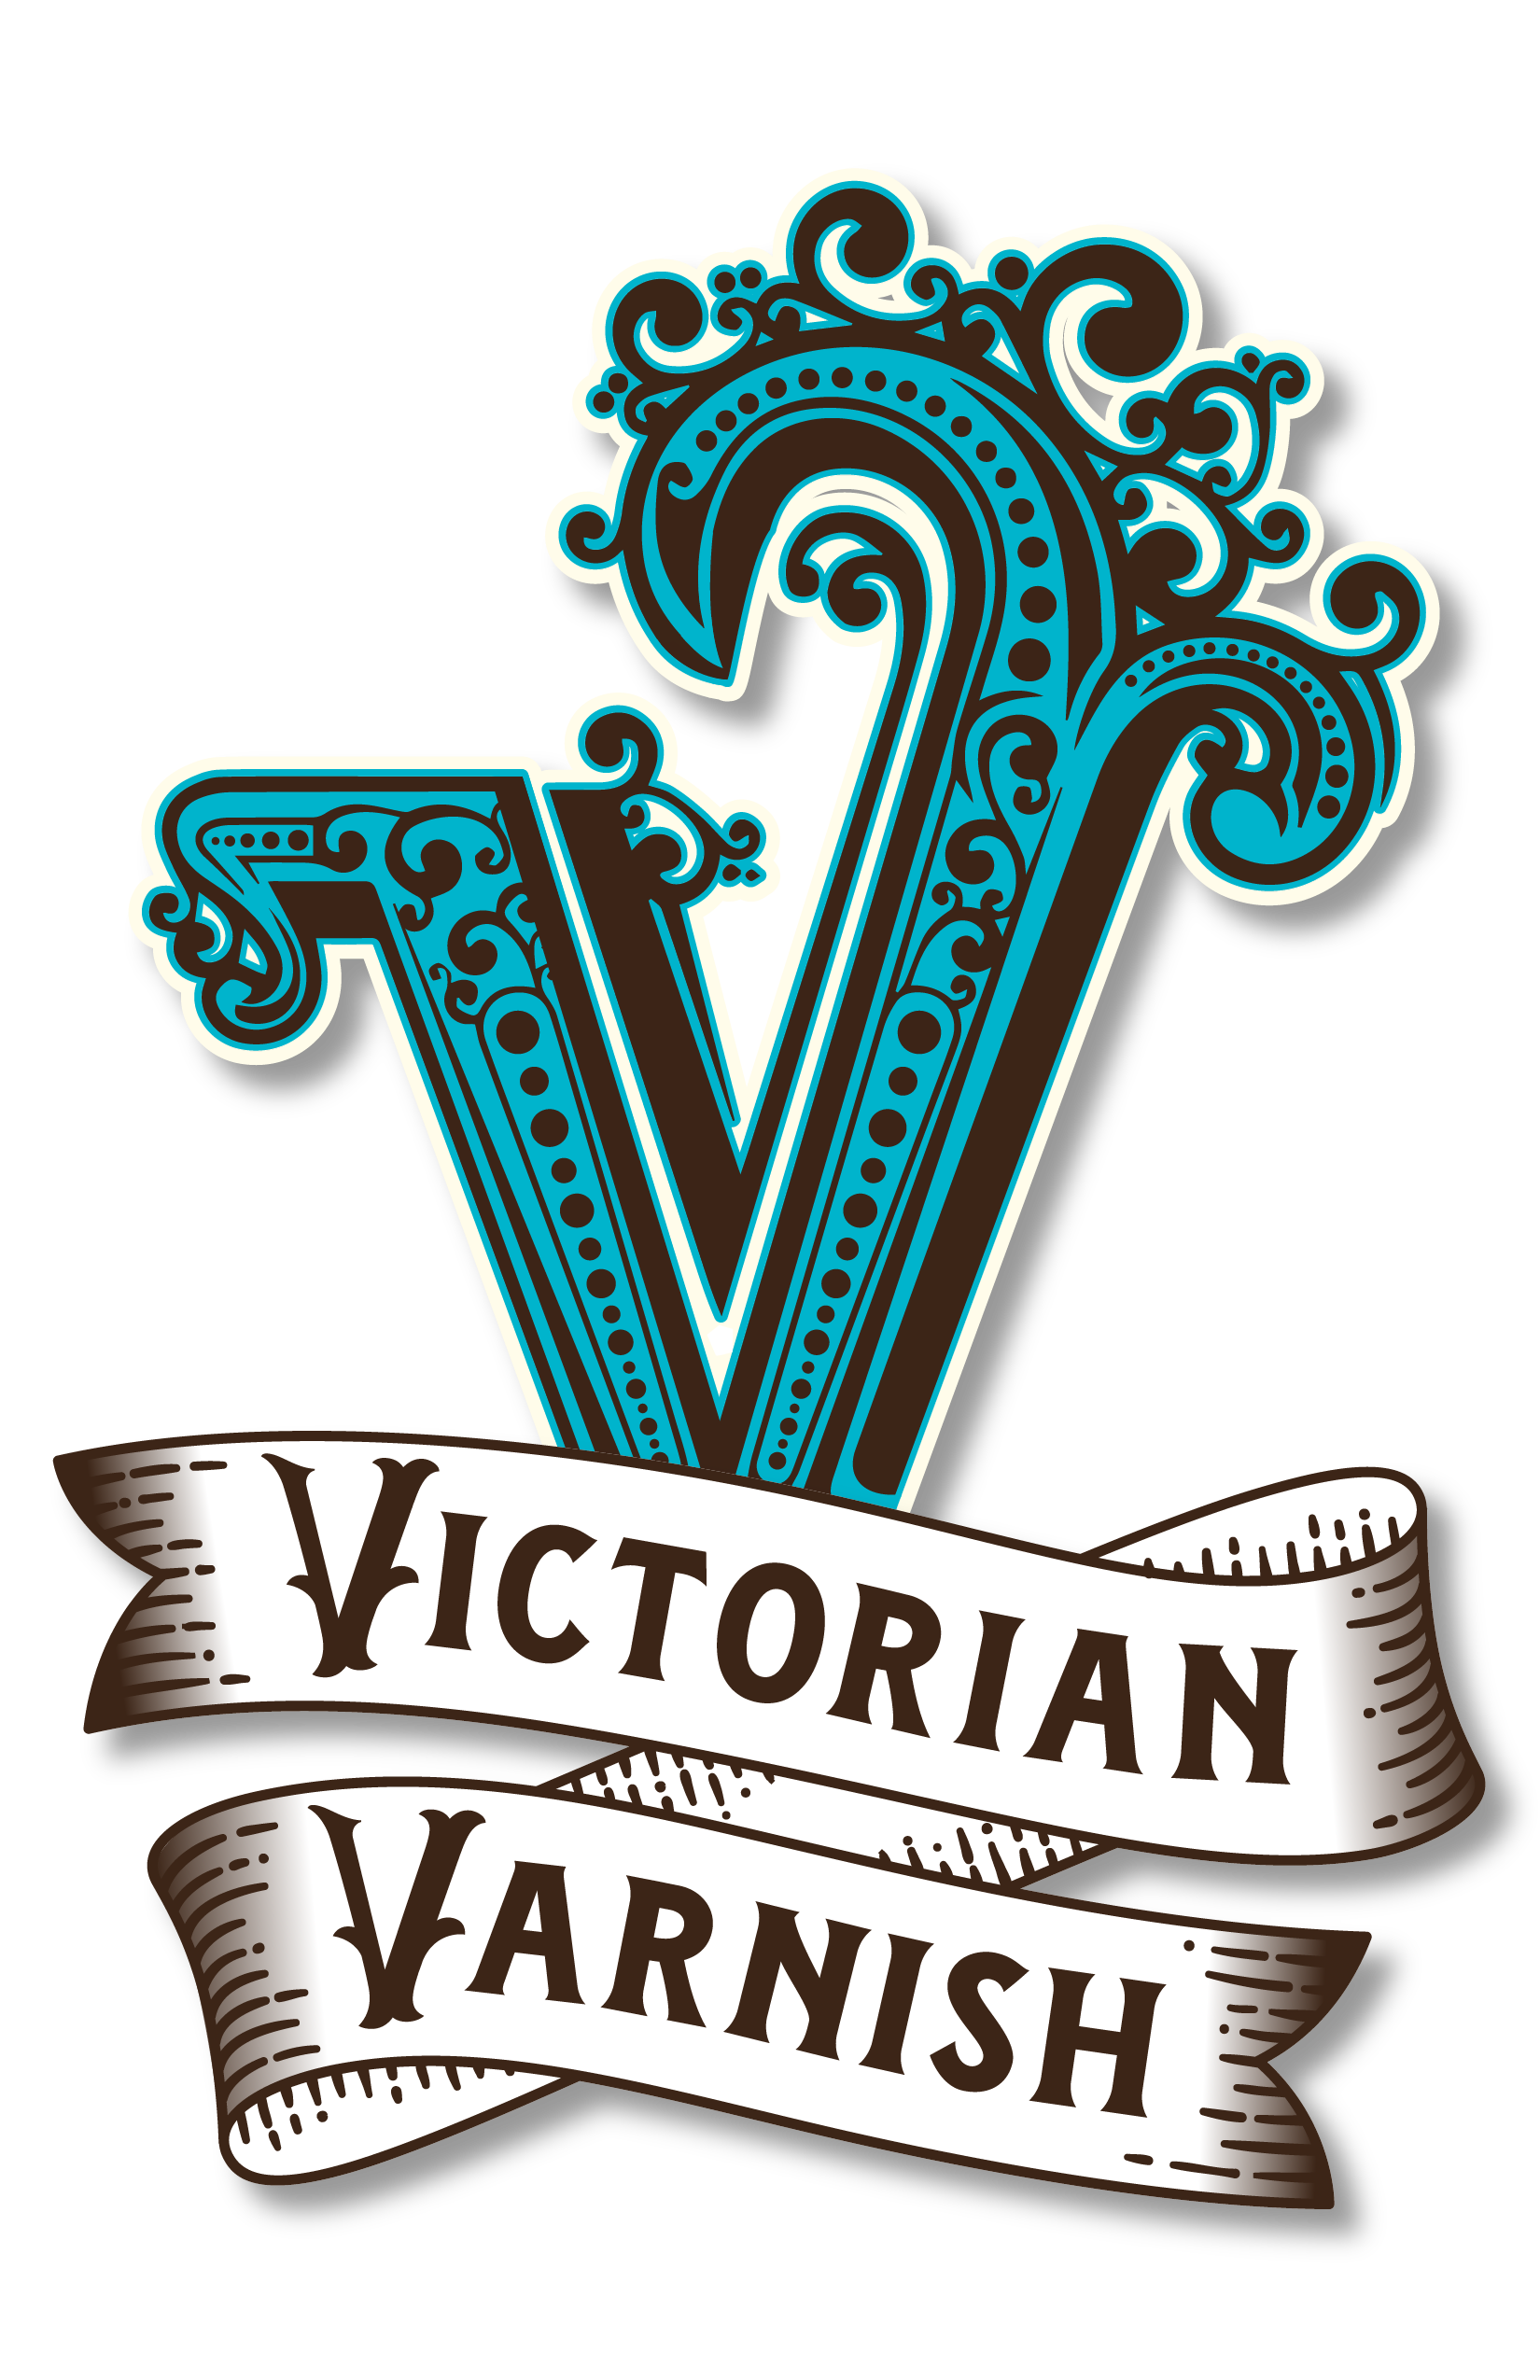 Victorian Varnish